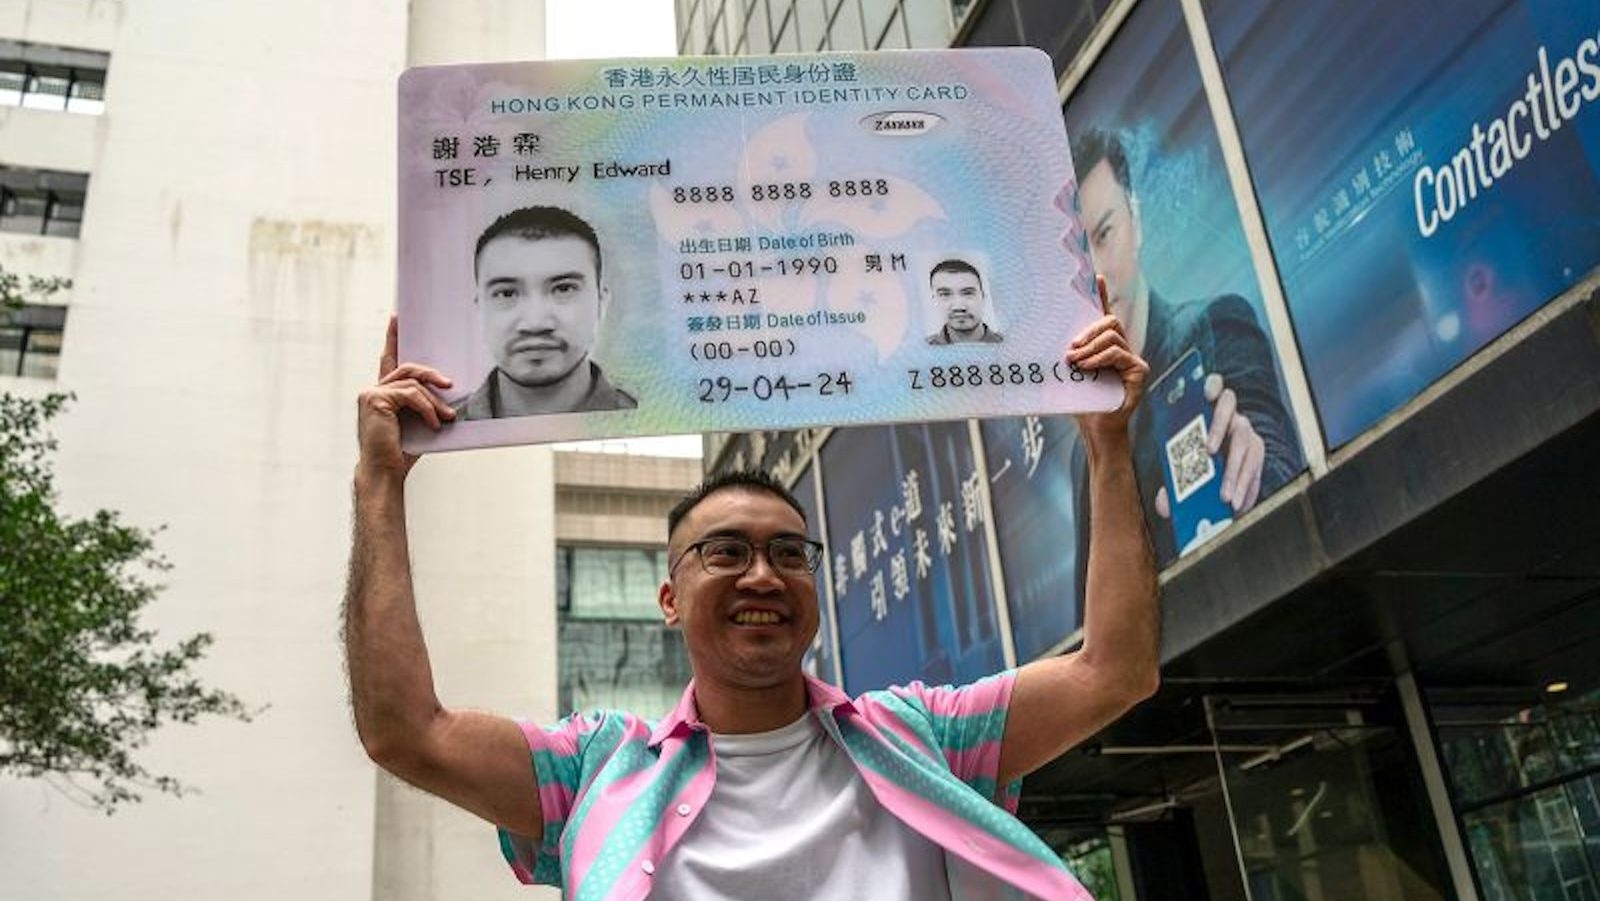 una activista transexual de hong kong obtiene un nuevo documento de identidad masculino tras años de batalla legal